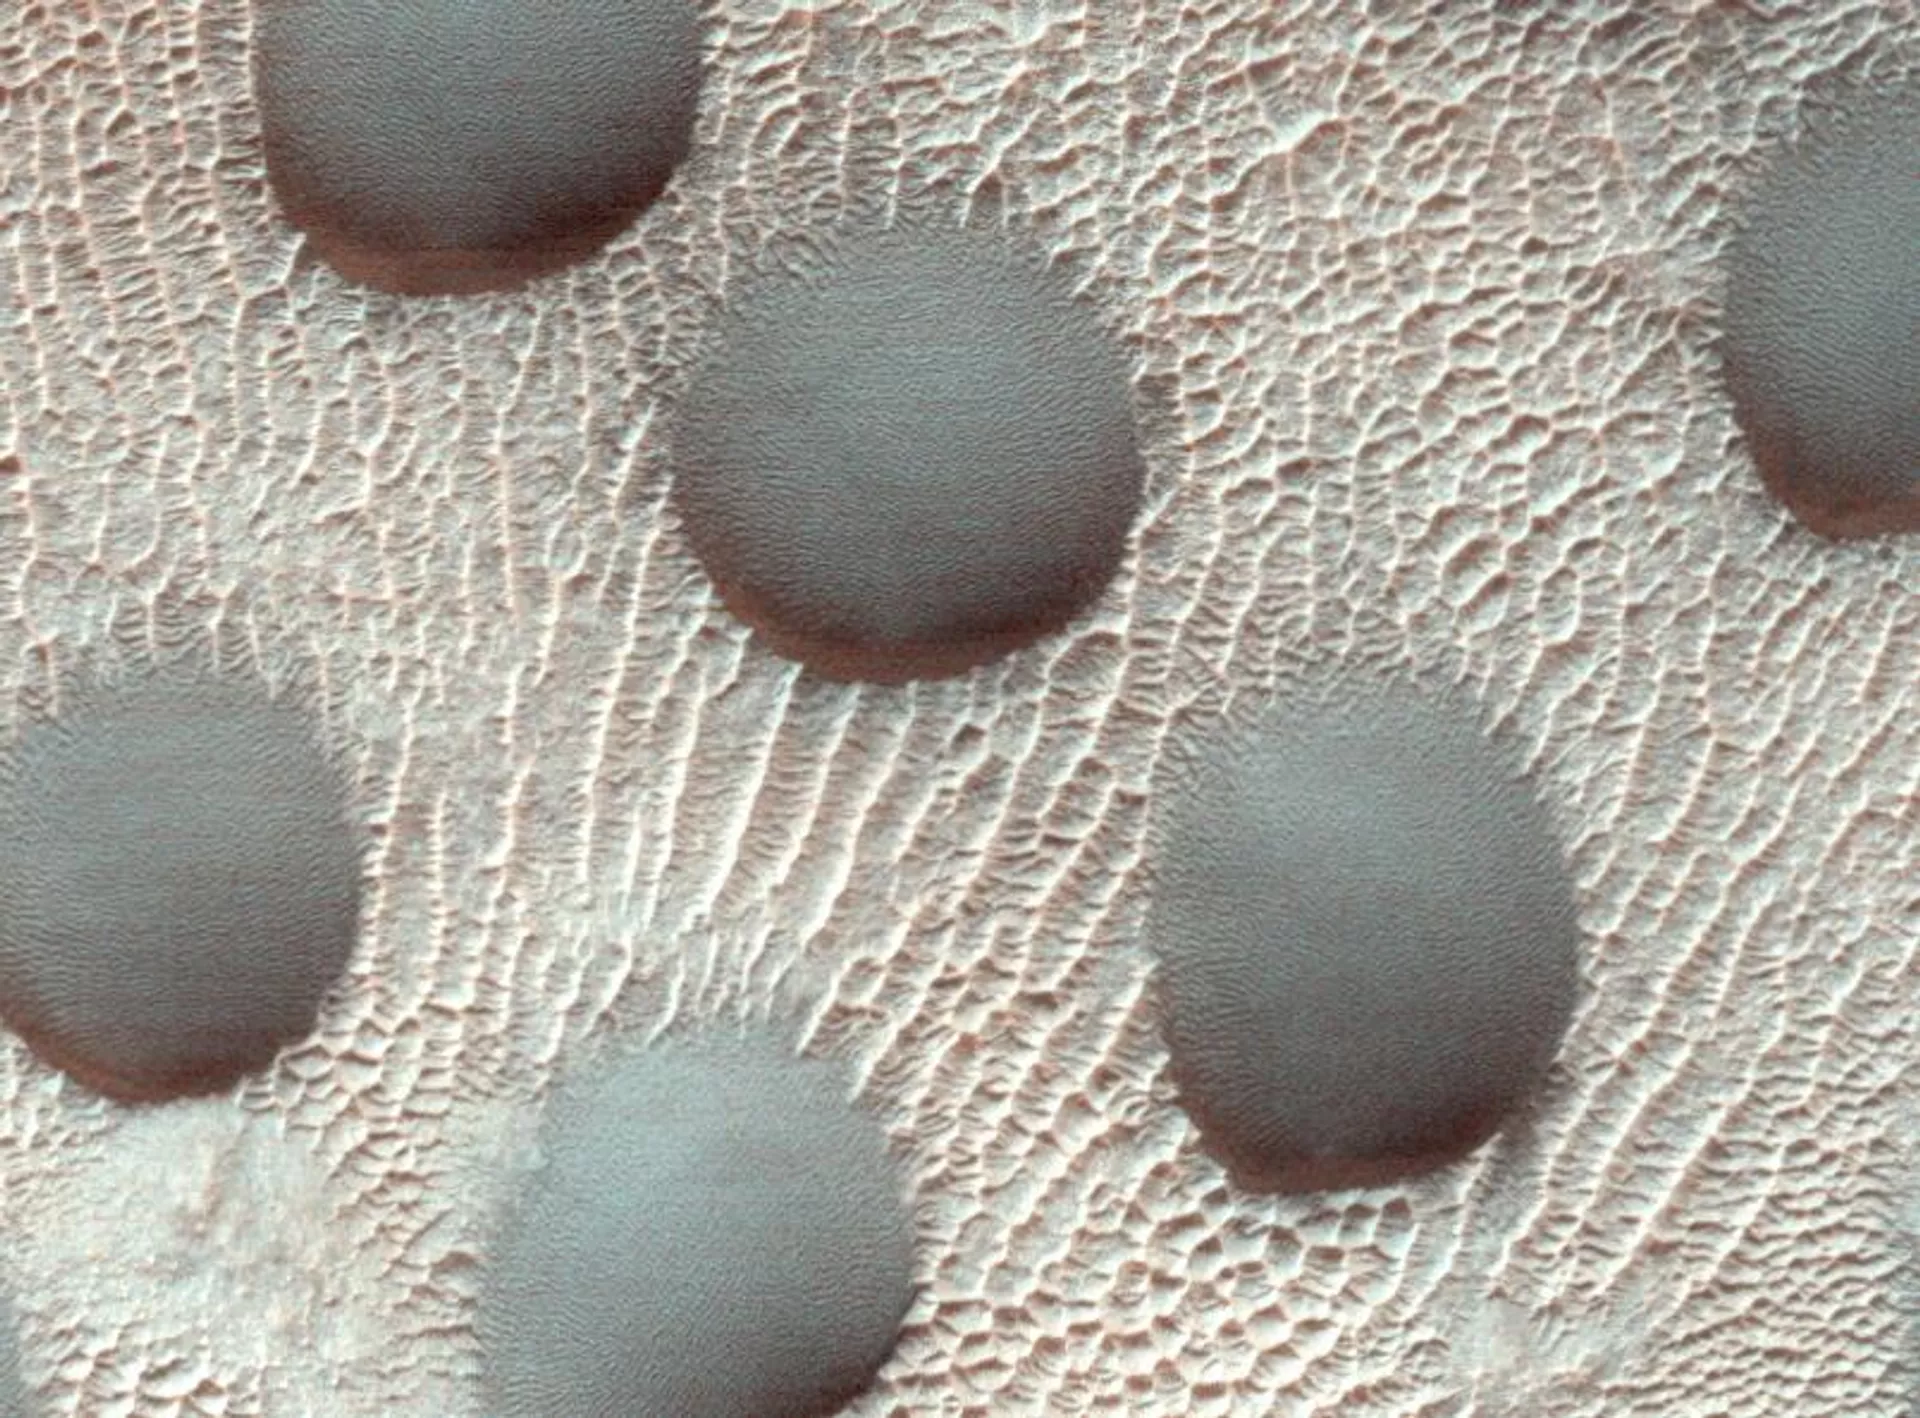 Фотографии: космический корабль НАСА запечатлел странные круглые песчаные дюны на Красной планете